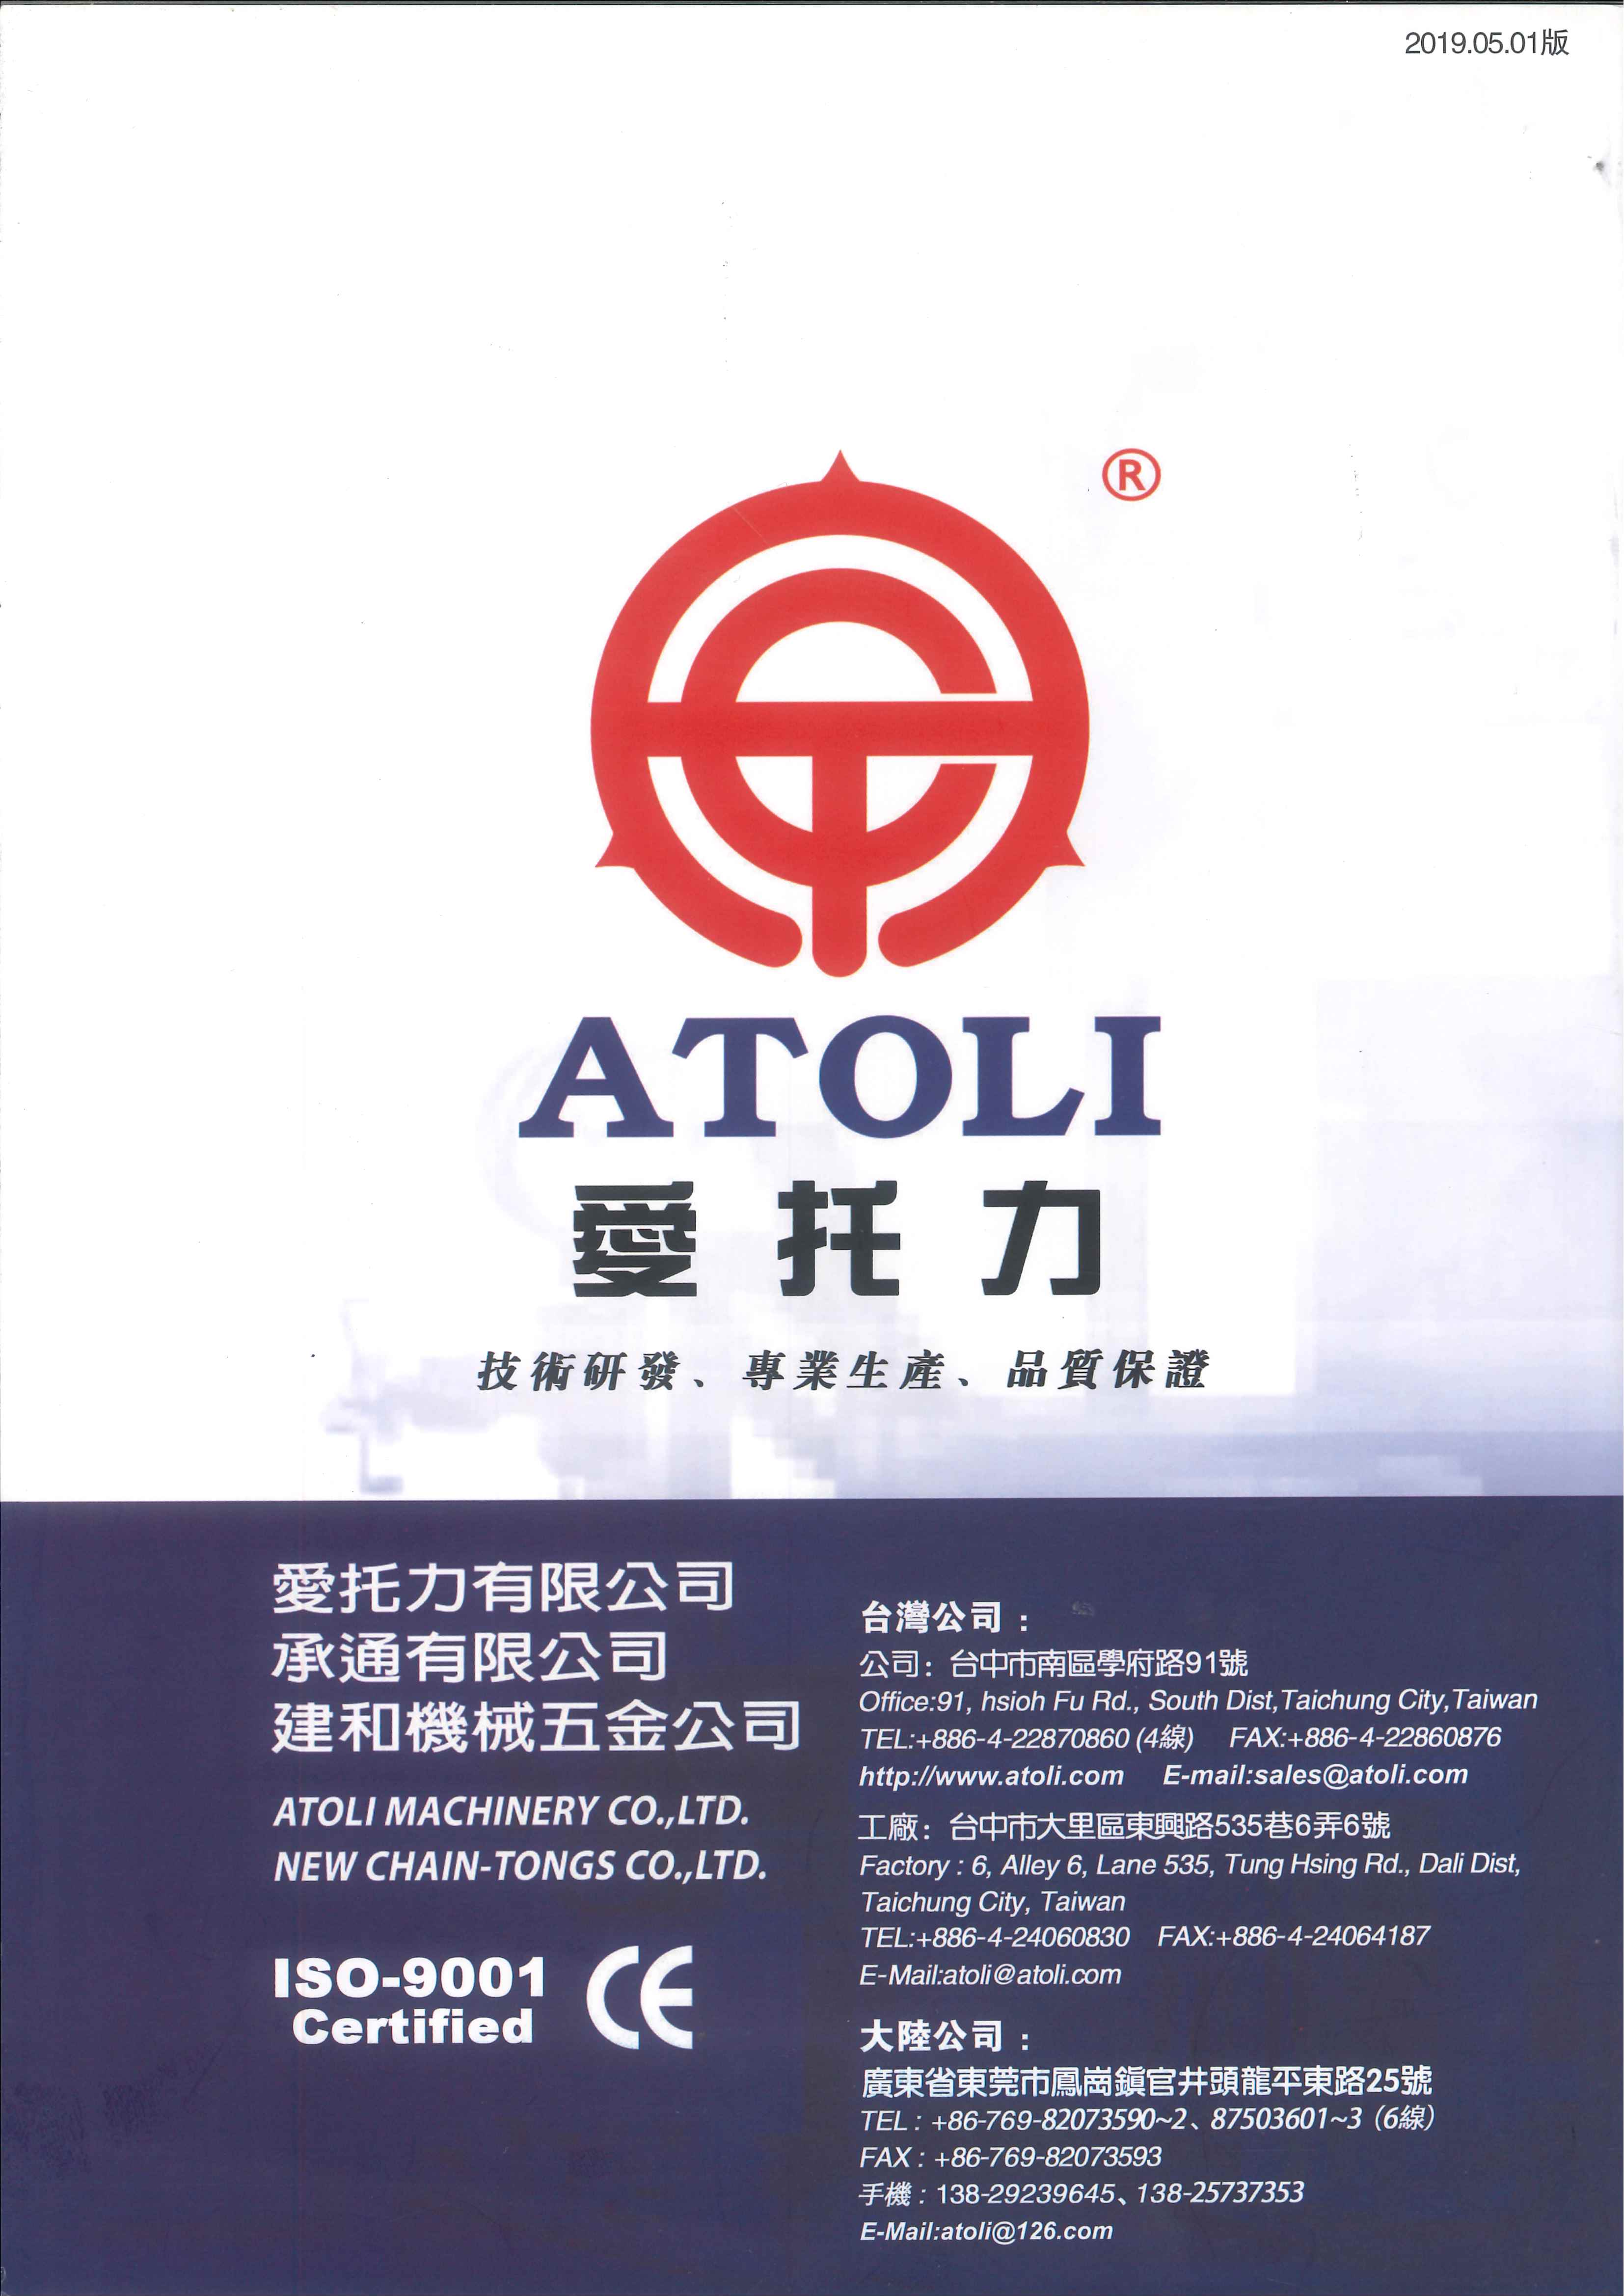 ATOLI MACHINERY CO LTD